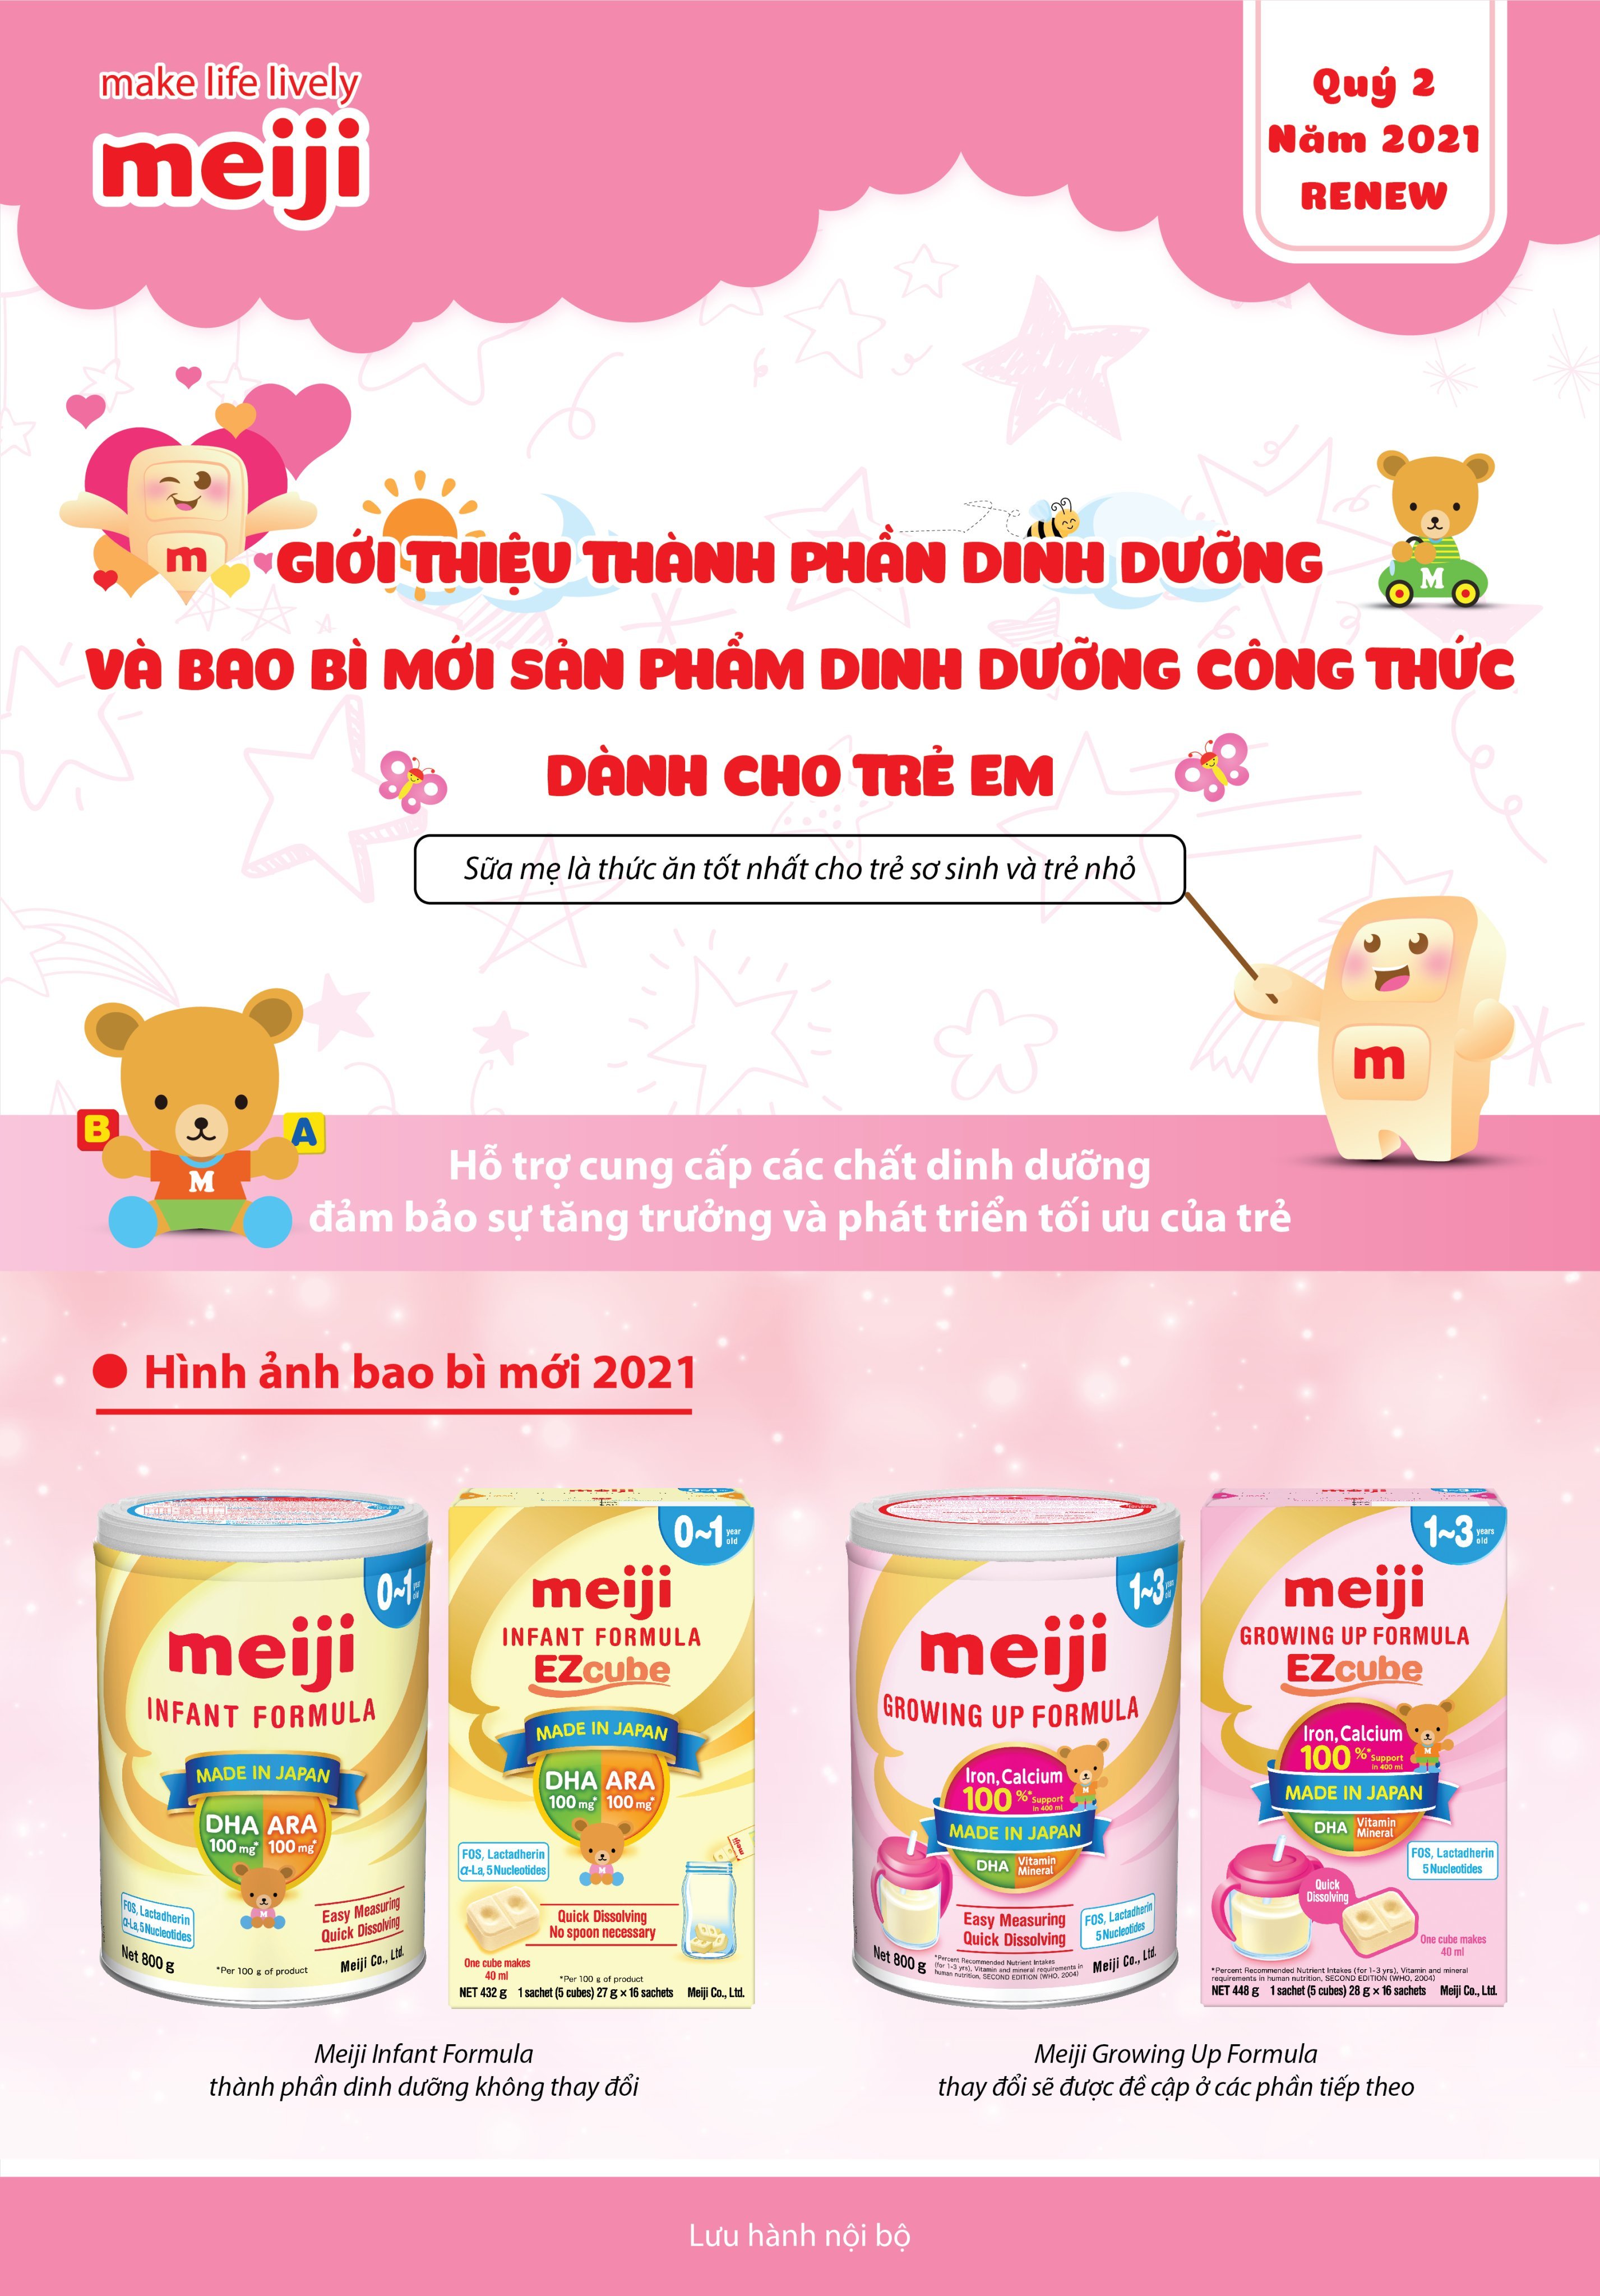 thành phần dinh dưỡng và bao bì mới của sữa Meiji